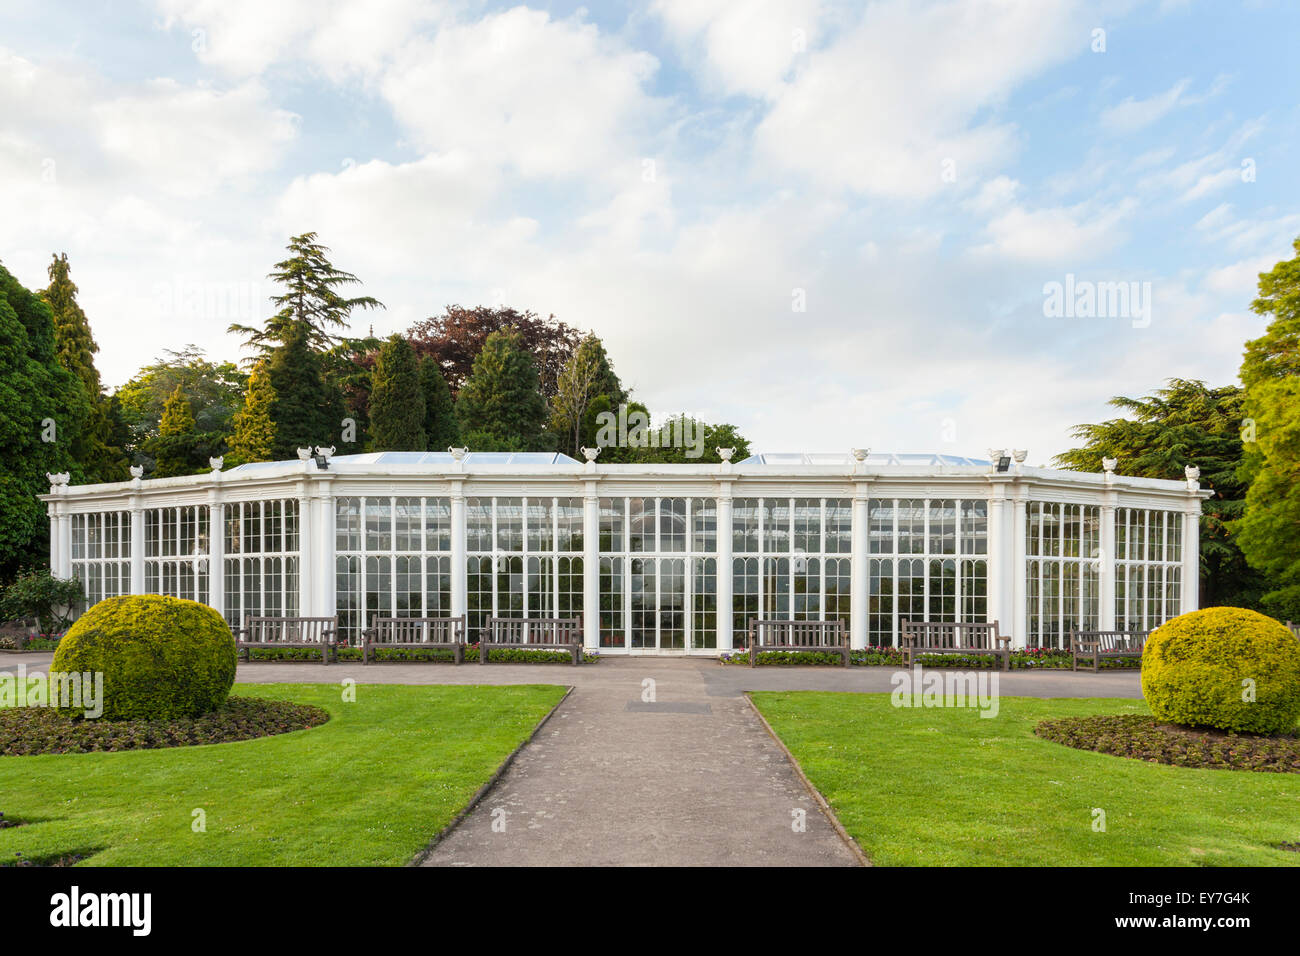 The Camellia House, Wollaton Park, Nottingham, England, UK Stock Photo